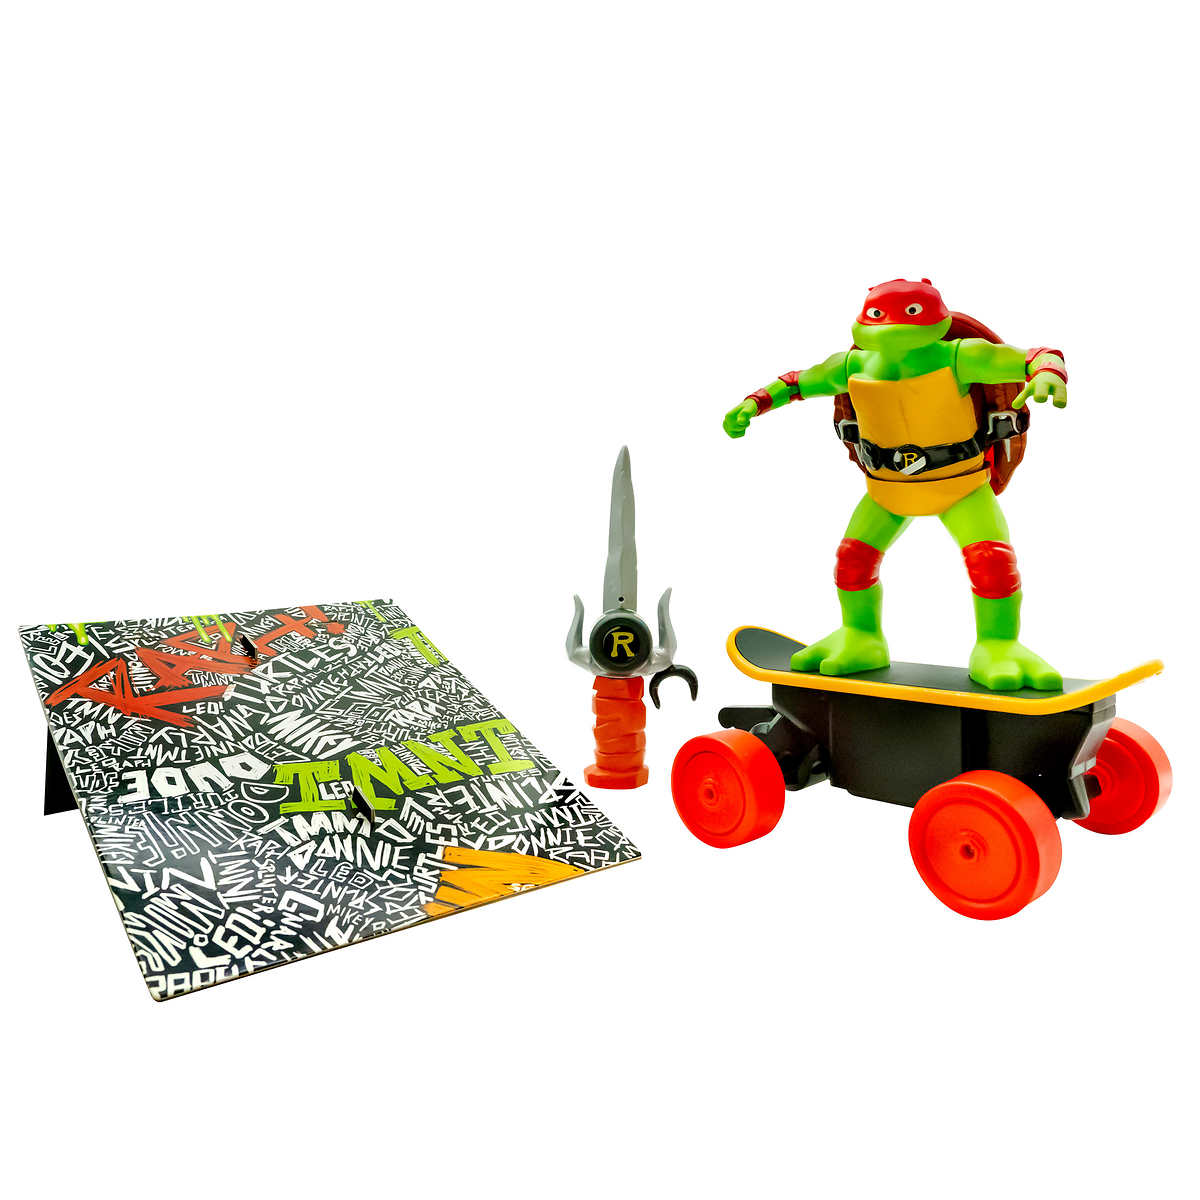 Ninja Turtles Cowabunga Skate R/C